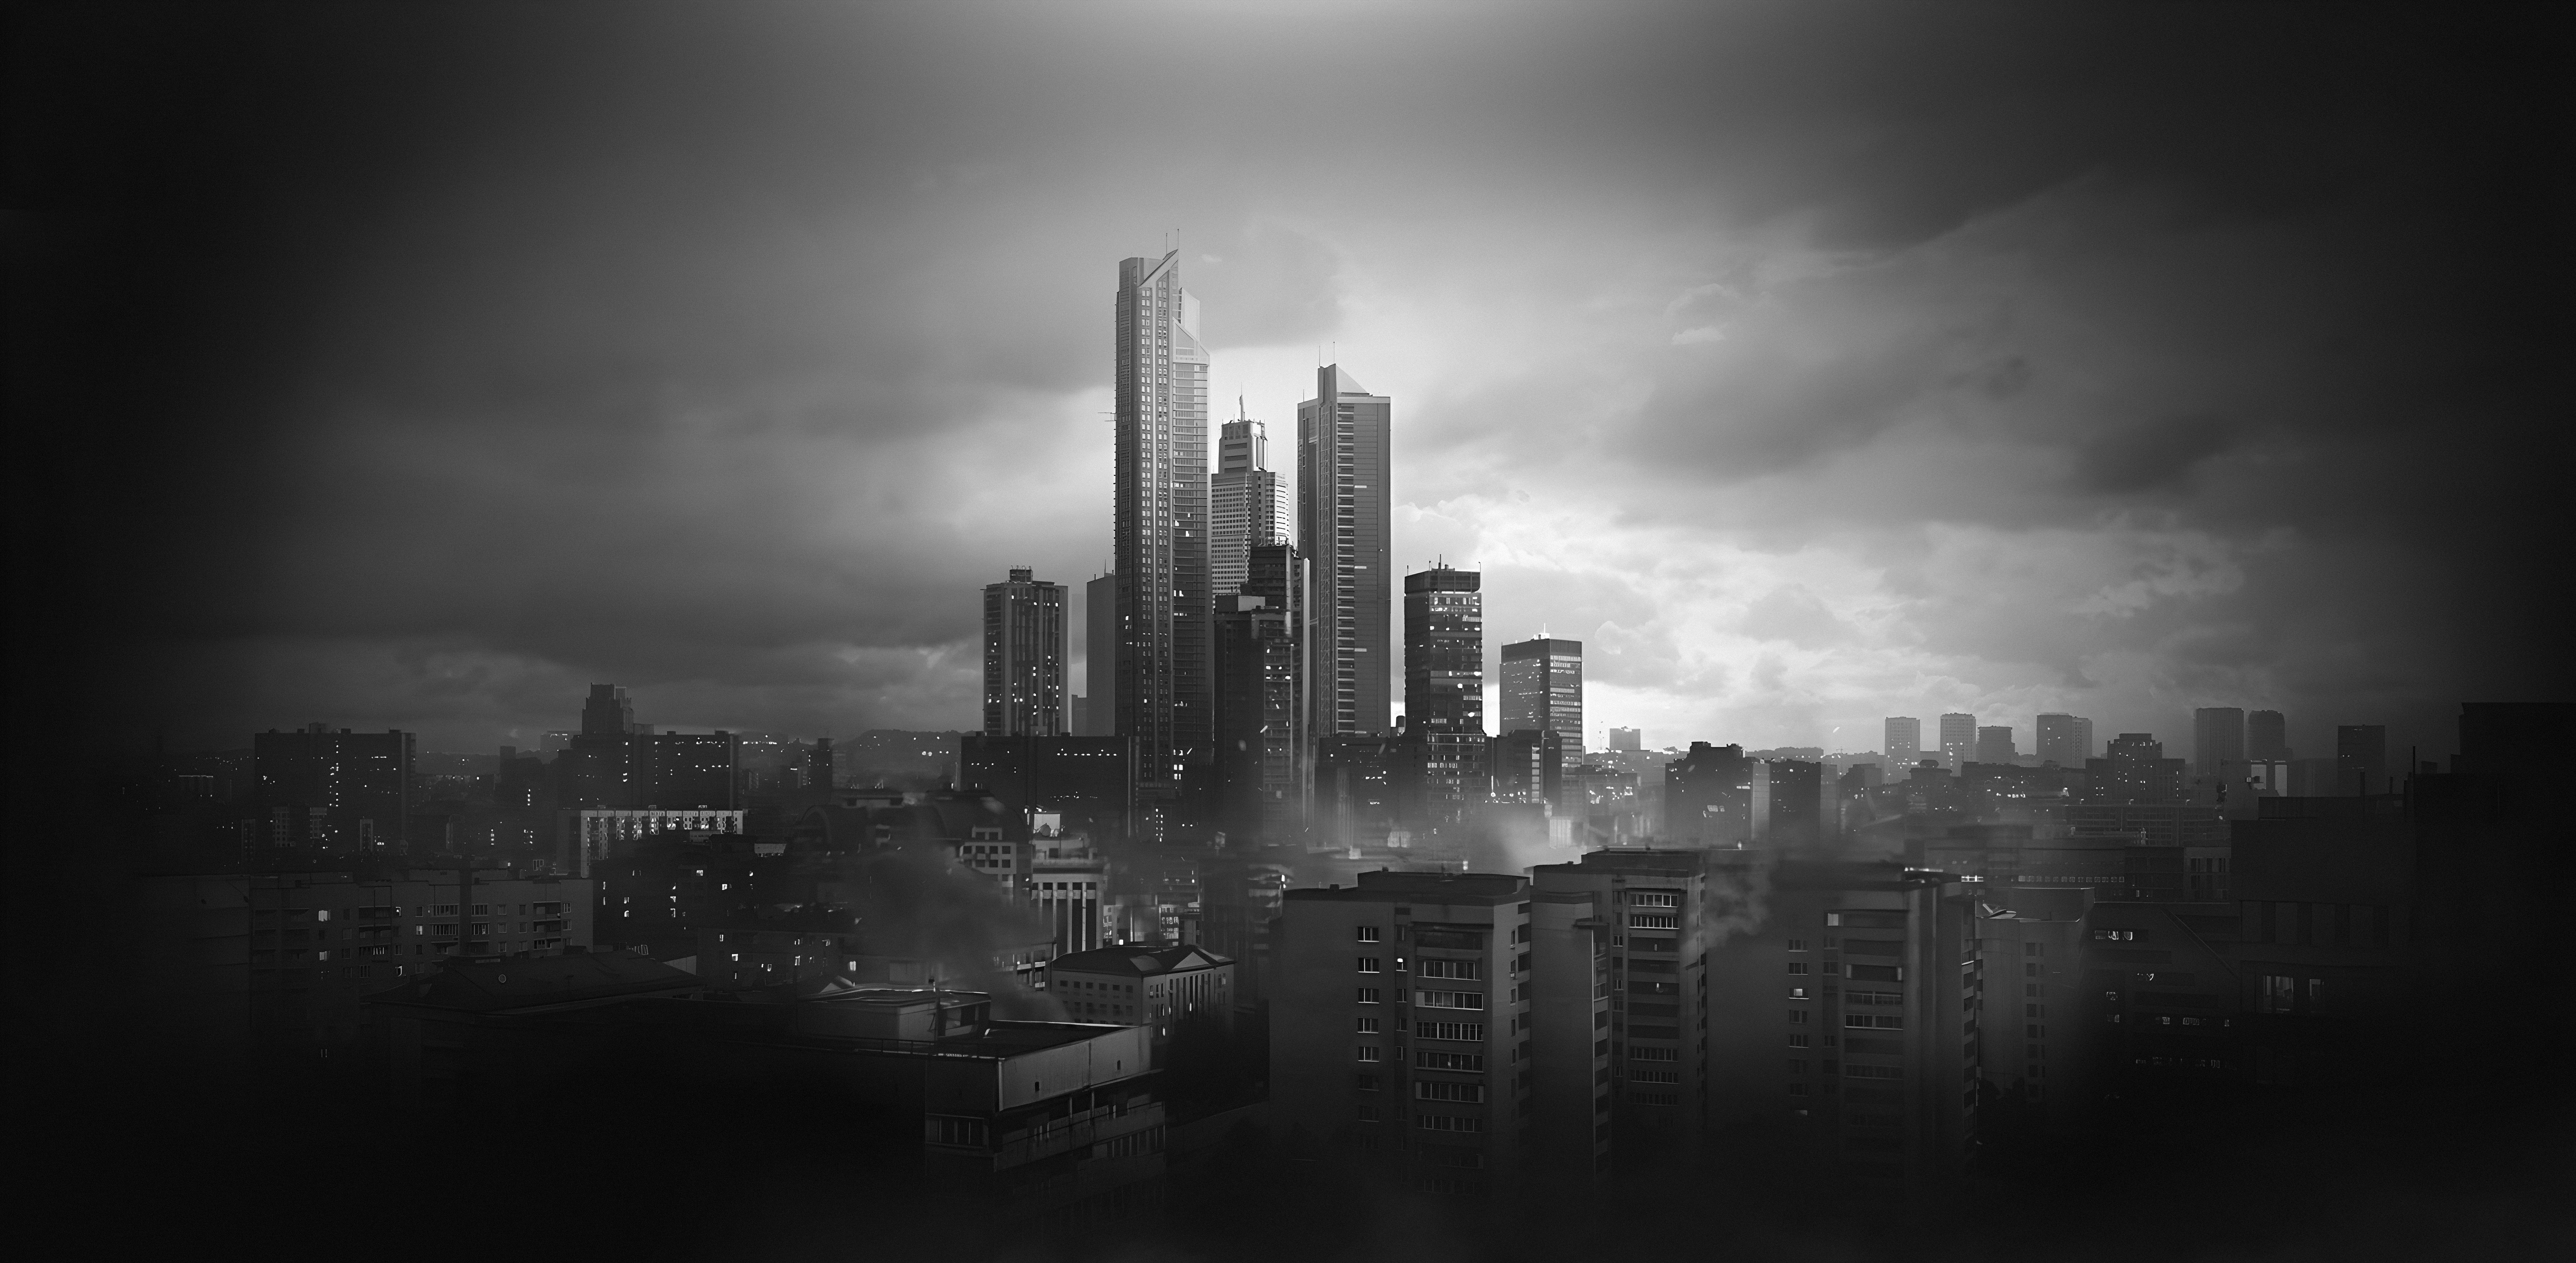 Escape From Tarkov Video Games City Digital Art Monochrome Clouds Scyscrapers Russia 5374x2635